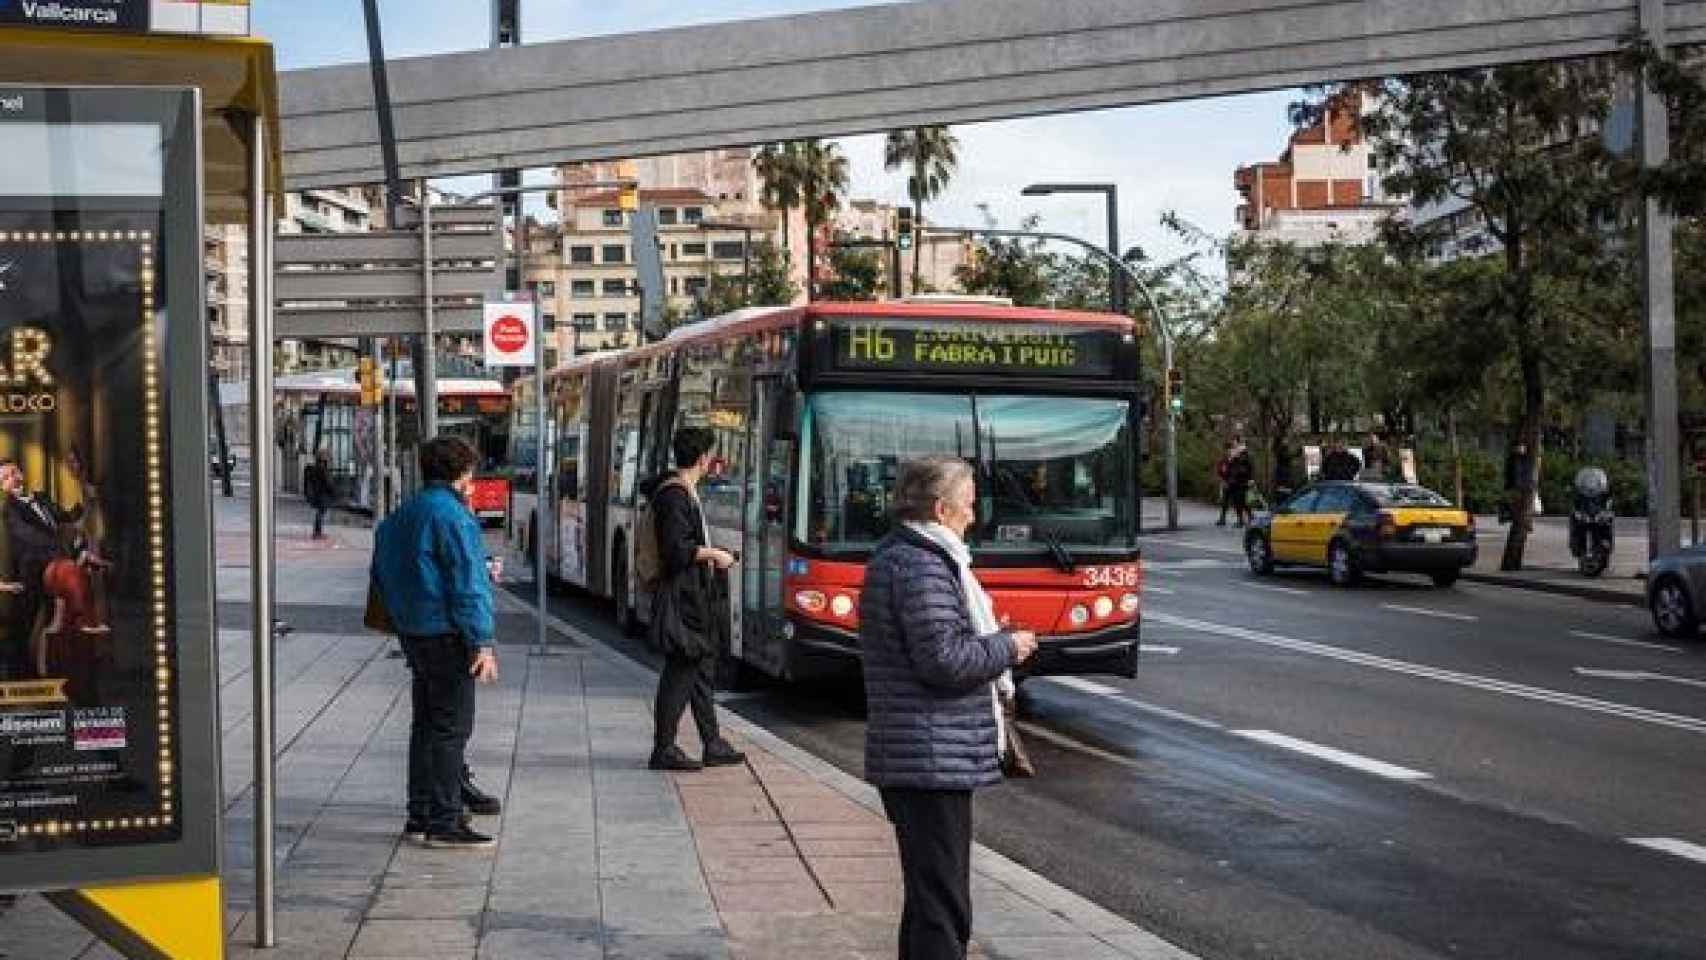 El bus H6, la línea con más pasajeros de Barcelona